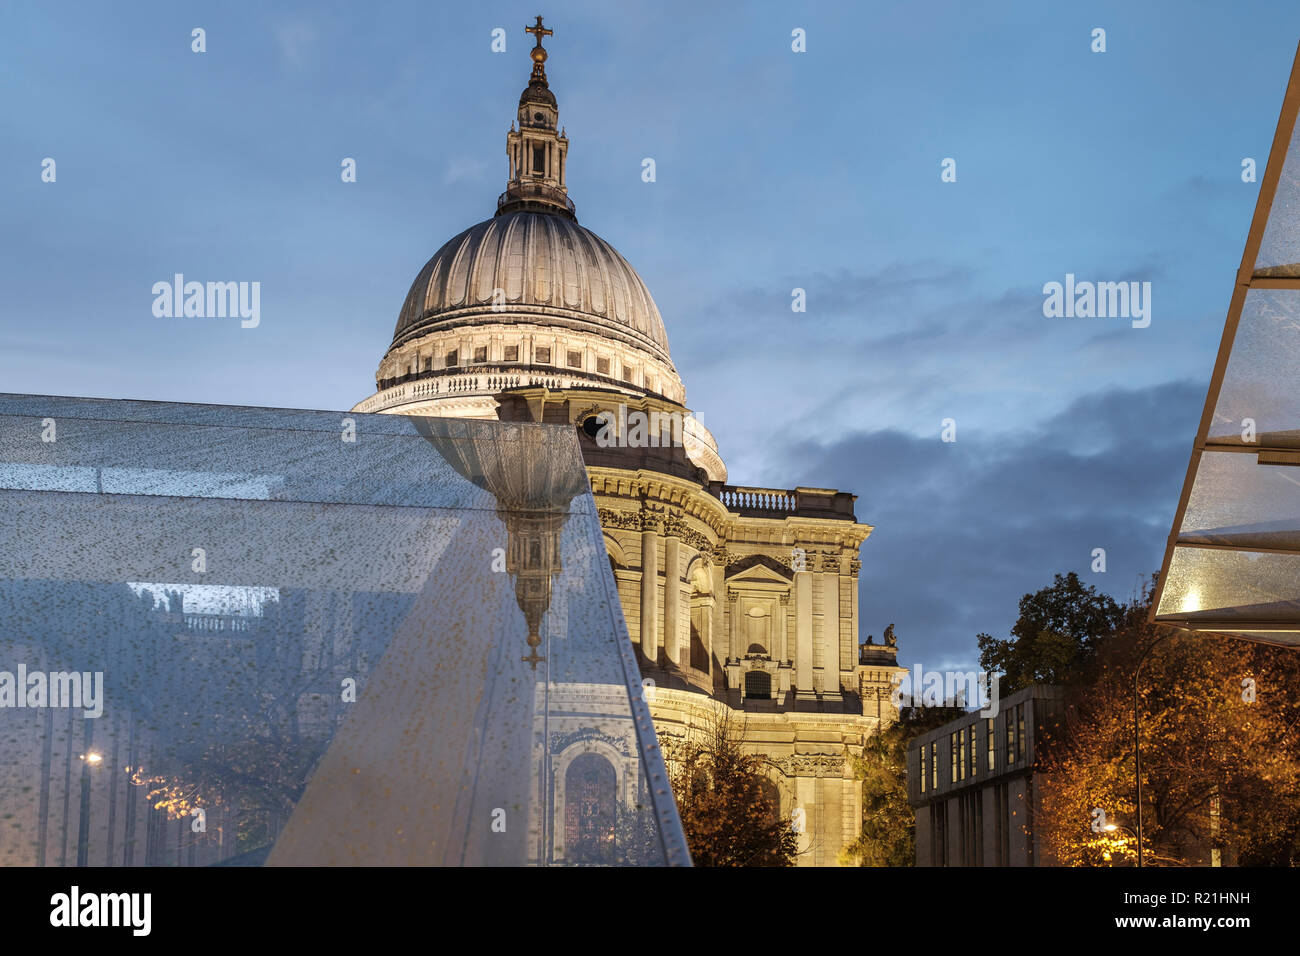 England, London, eine neue Änderung - Saint Paul's Cathedral an einem regnerischen Gebäude Stockfoto